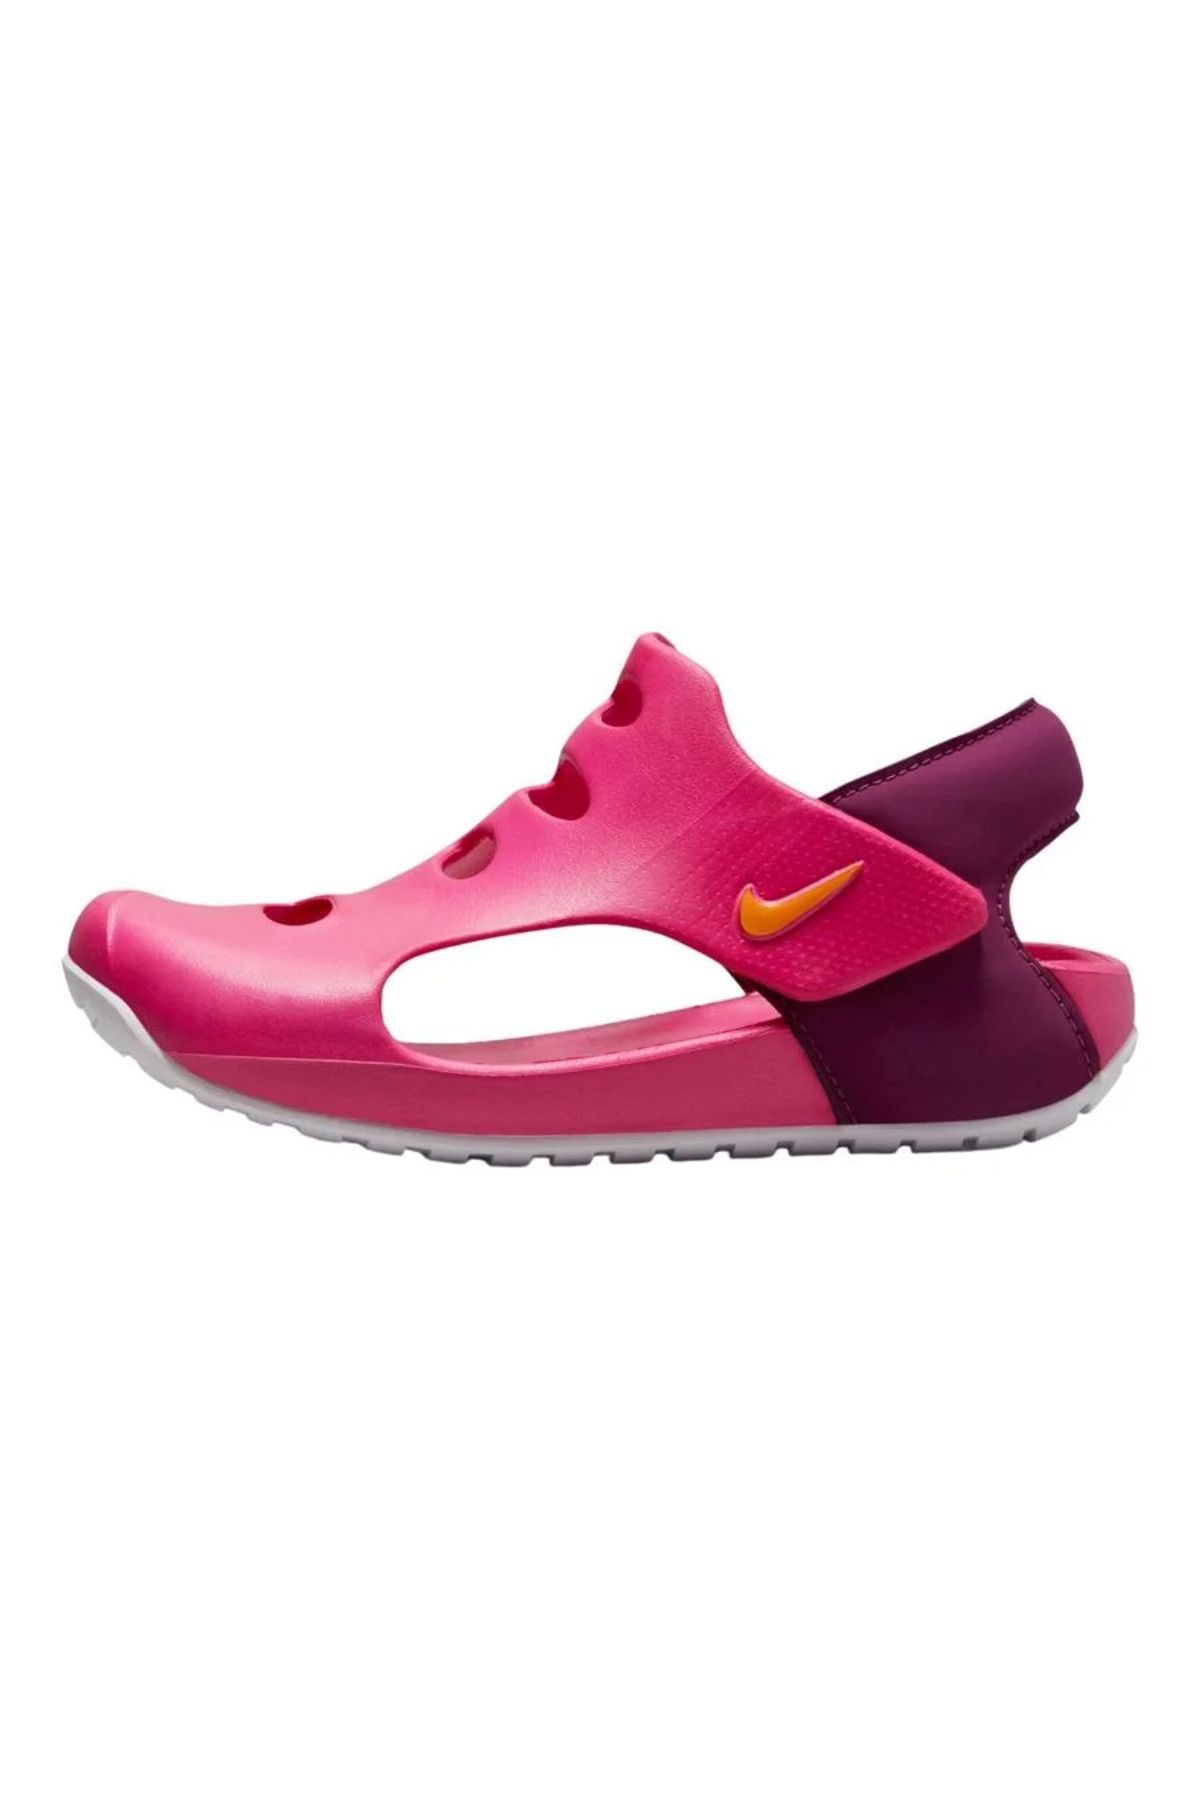 Nike Nıke Sunray Protect 3 Unısex Çocuk Sandalet Dh9462-602